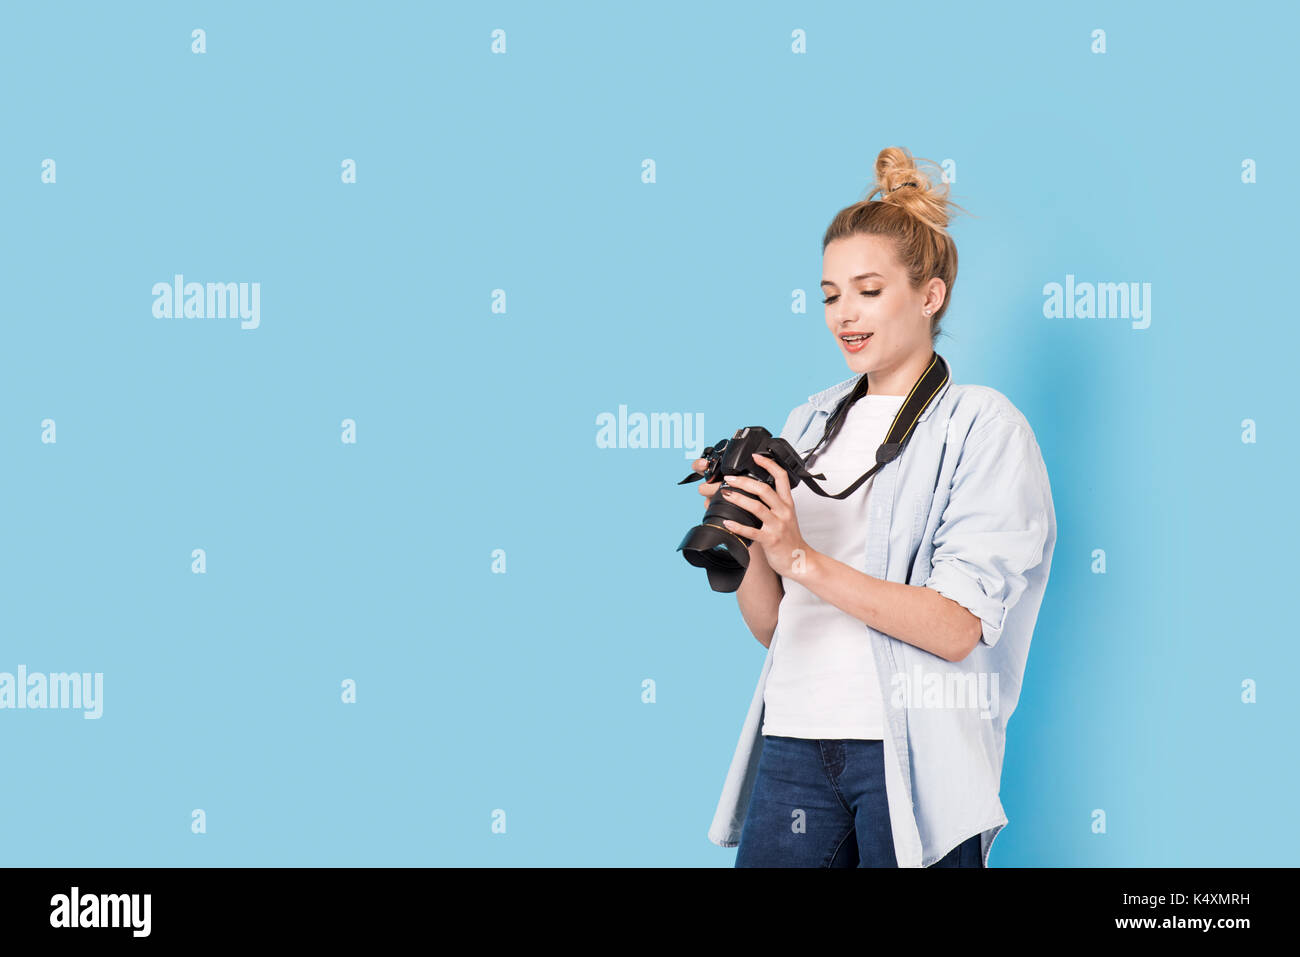 Fotografin ist über ihre Arbeit zufrieden. Modell isoliert auf einem blauen Hintergrund mit Kopie Raum Stockfoto